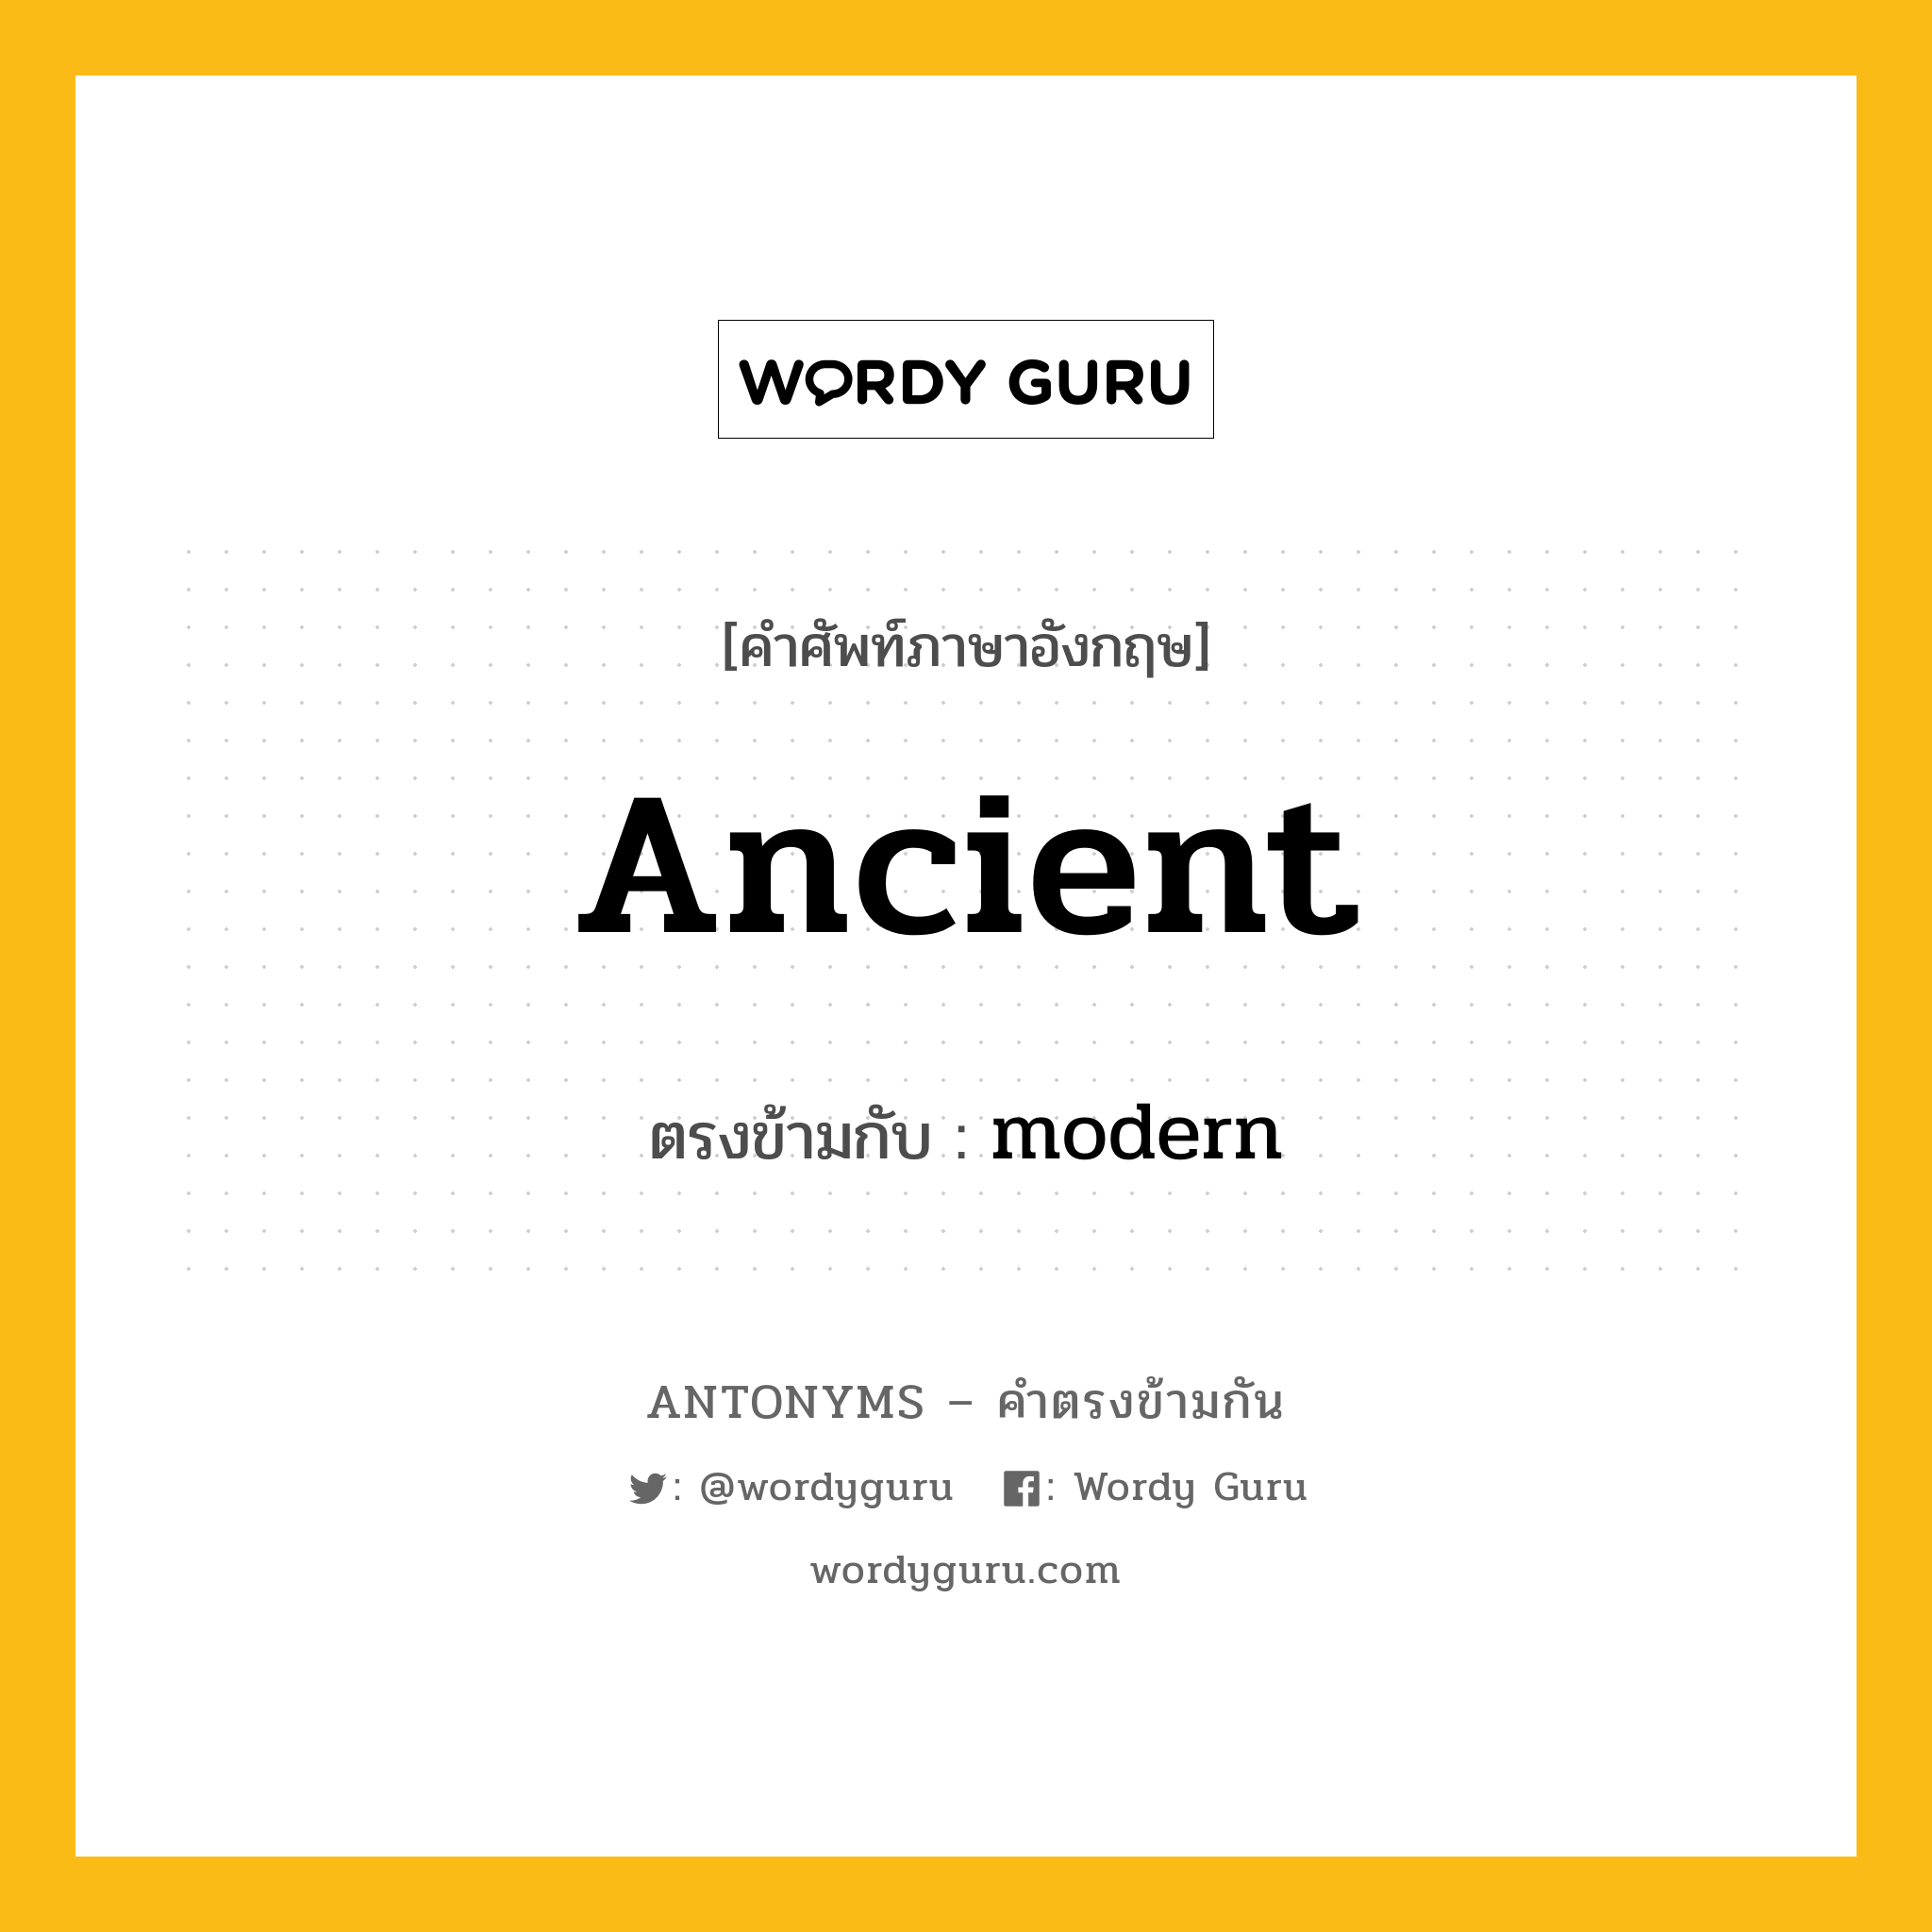 ancient เป็นคำตรงข้ามกับคำไหนบ้าง?, คำศัพท์ภาษาอังกฤษ ancient ตรงข้ามกับ modern หมวด modern